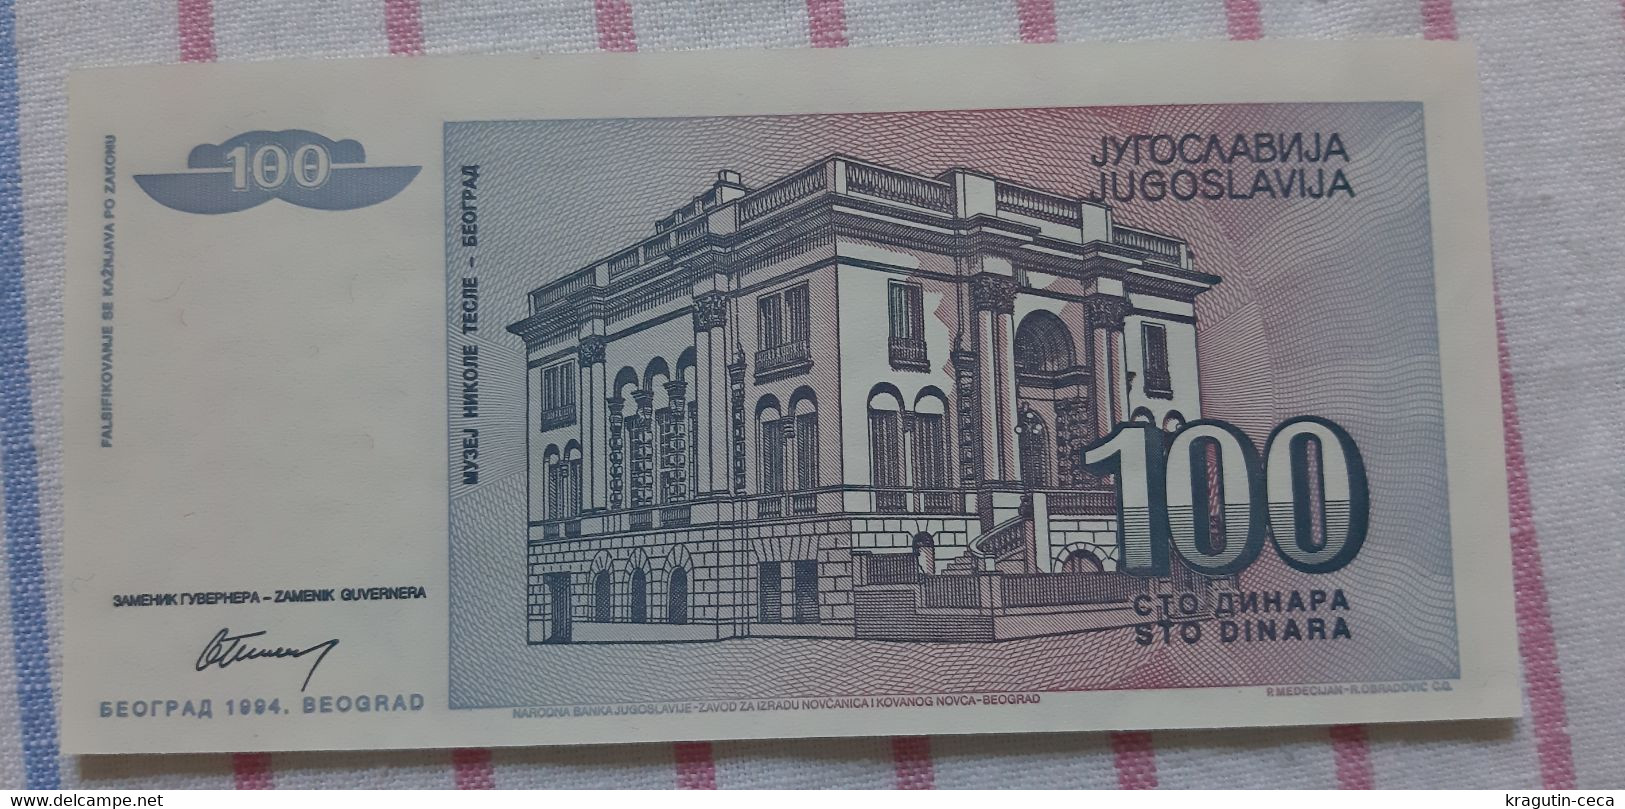 Nikola Tesla 1994 Yugoslavia SERBIA 100 Dinar Banknote BILL